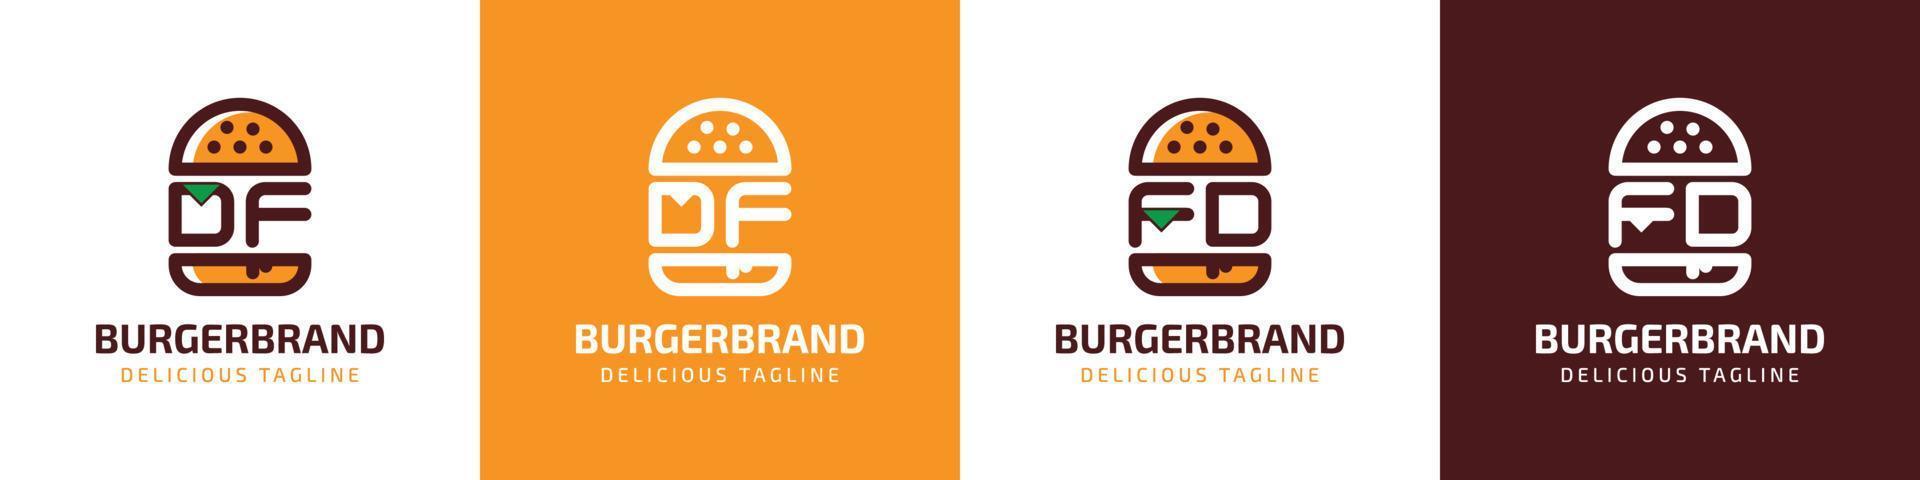 lettre df et fd Burger logo, adapté pour tout affaires en relation à Burger avec df ou fd initiales. vecteur